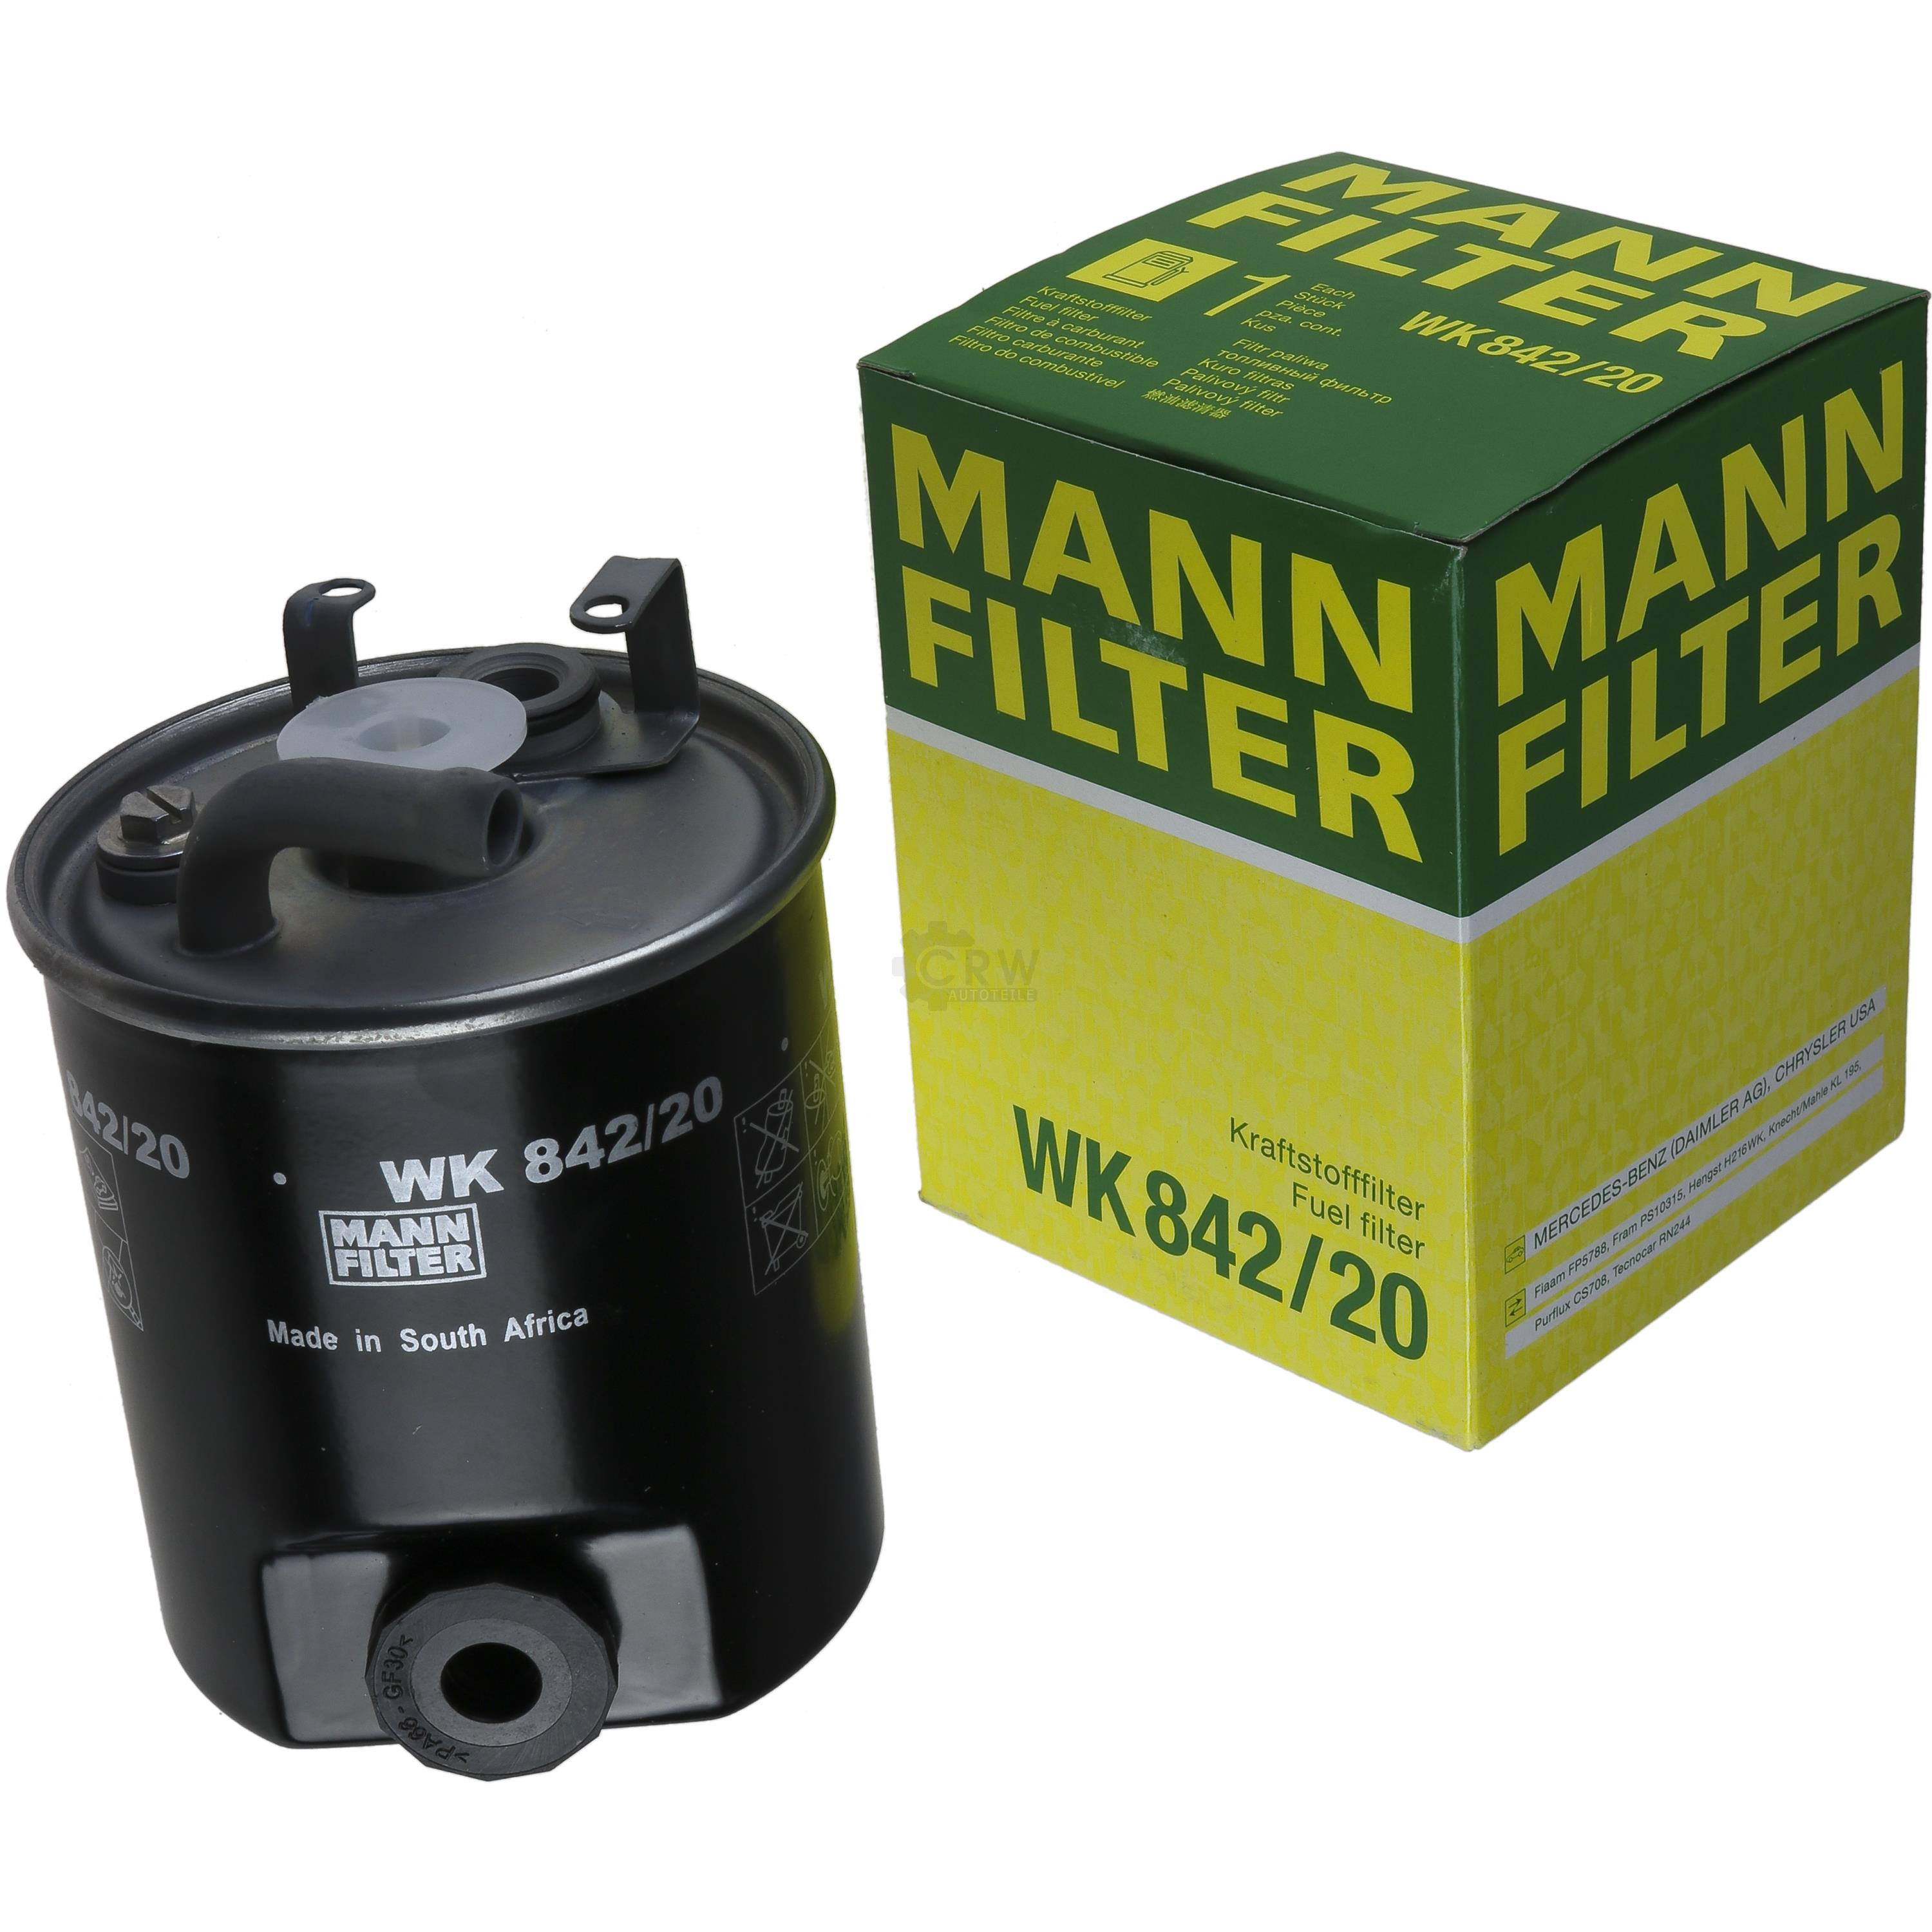 MANN-FILTER Kraftstofffilter WK 842/20 Fuel Filter